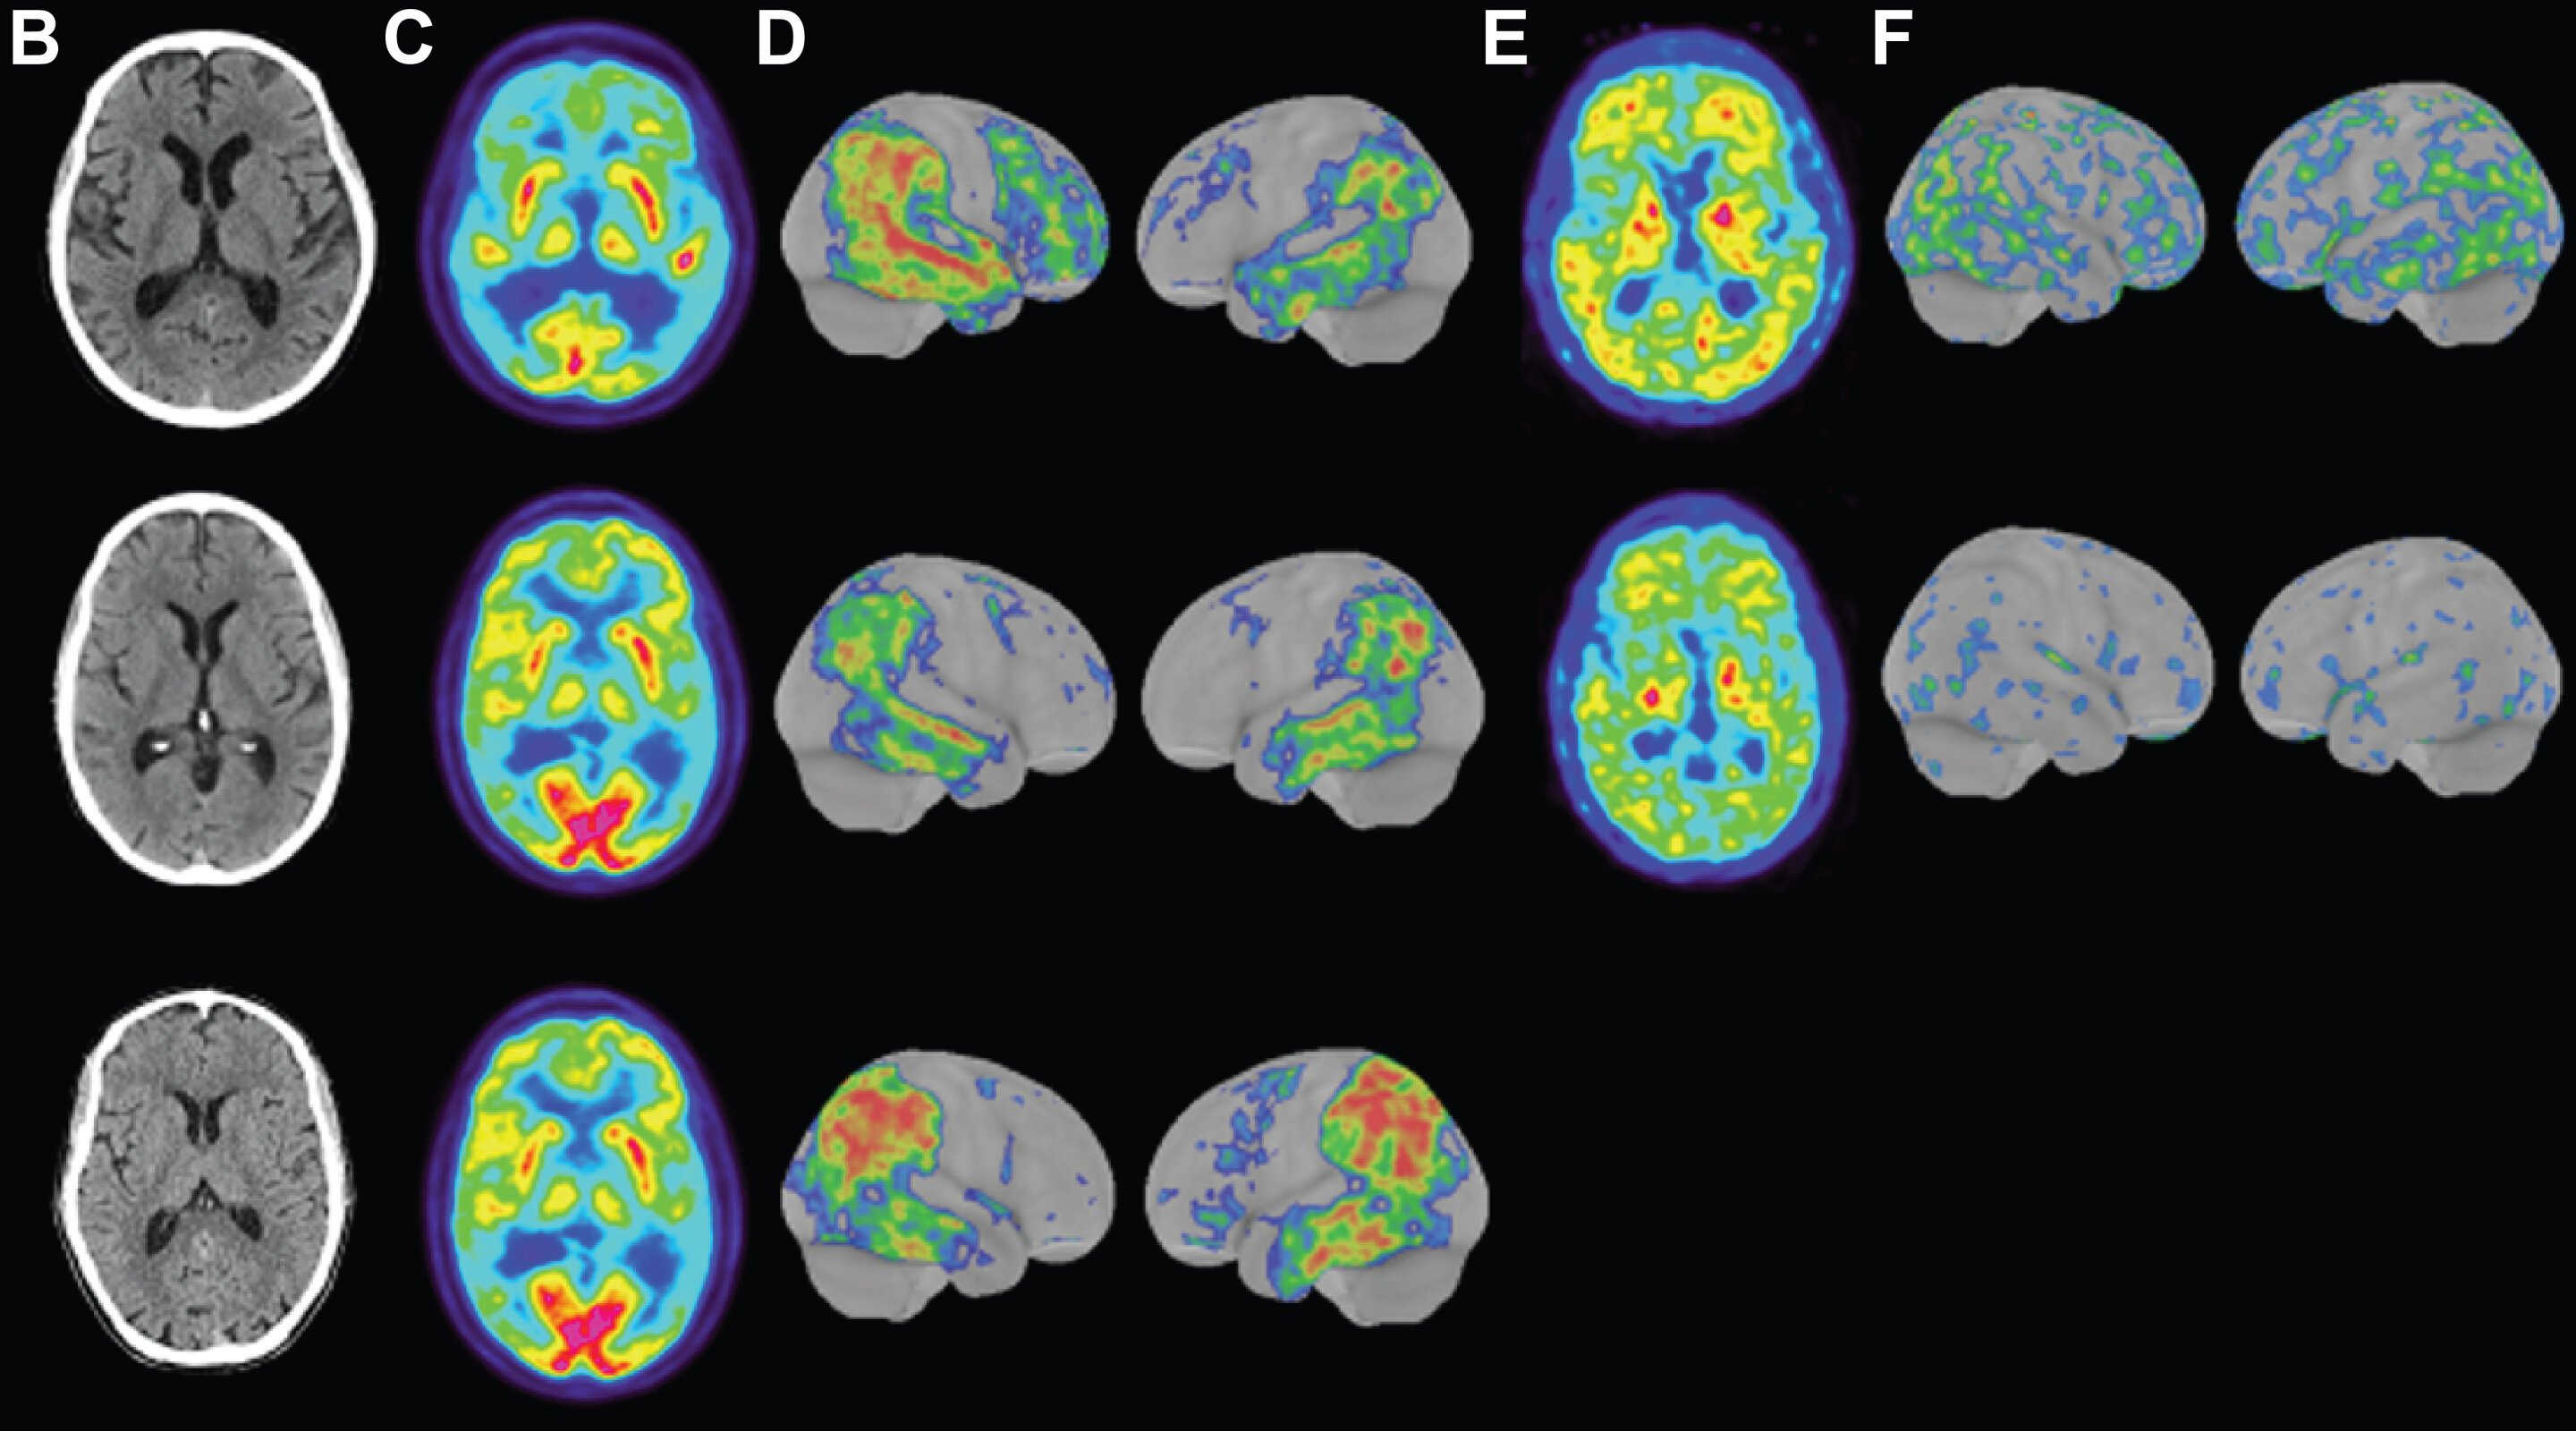 Imagens dos cérebros dos três portadores da forma de Alzheimer precoce